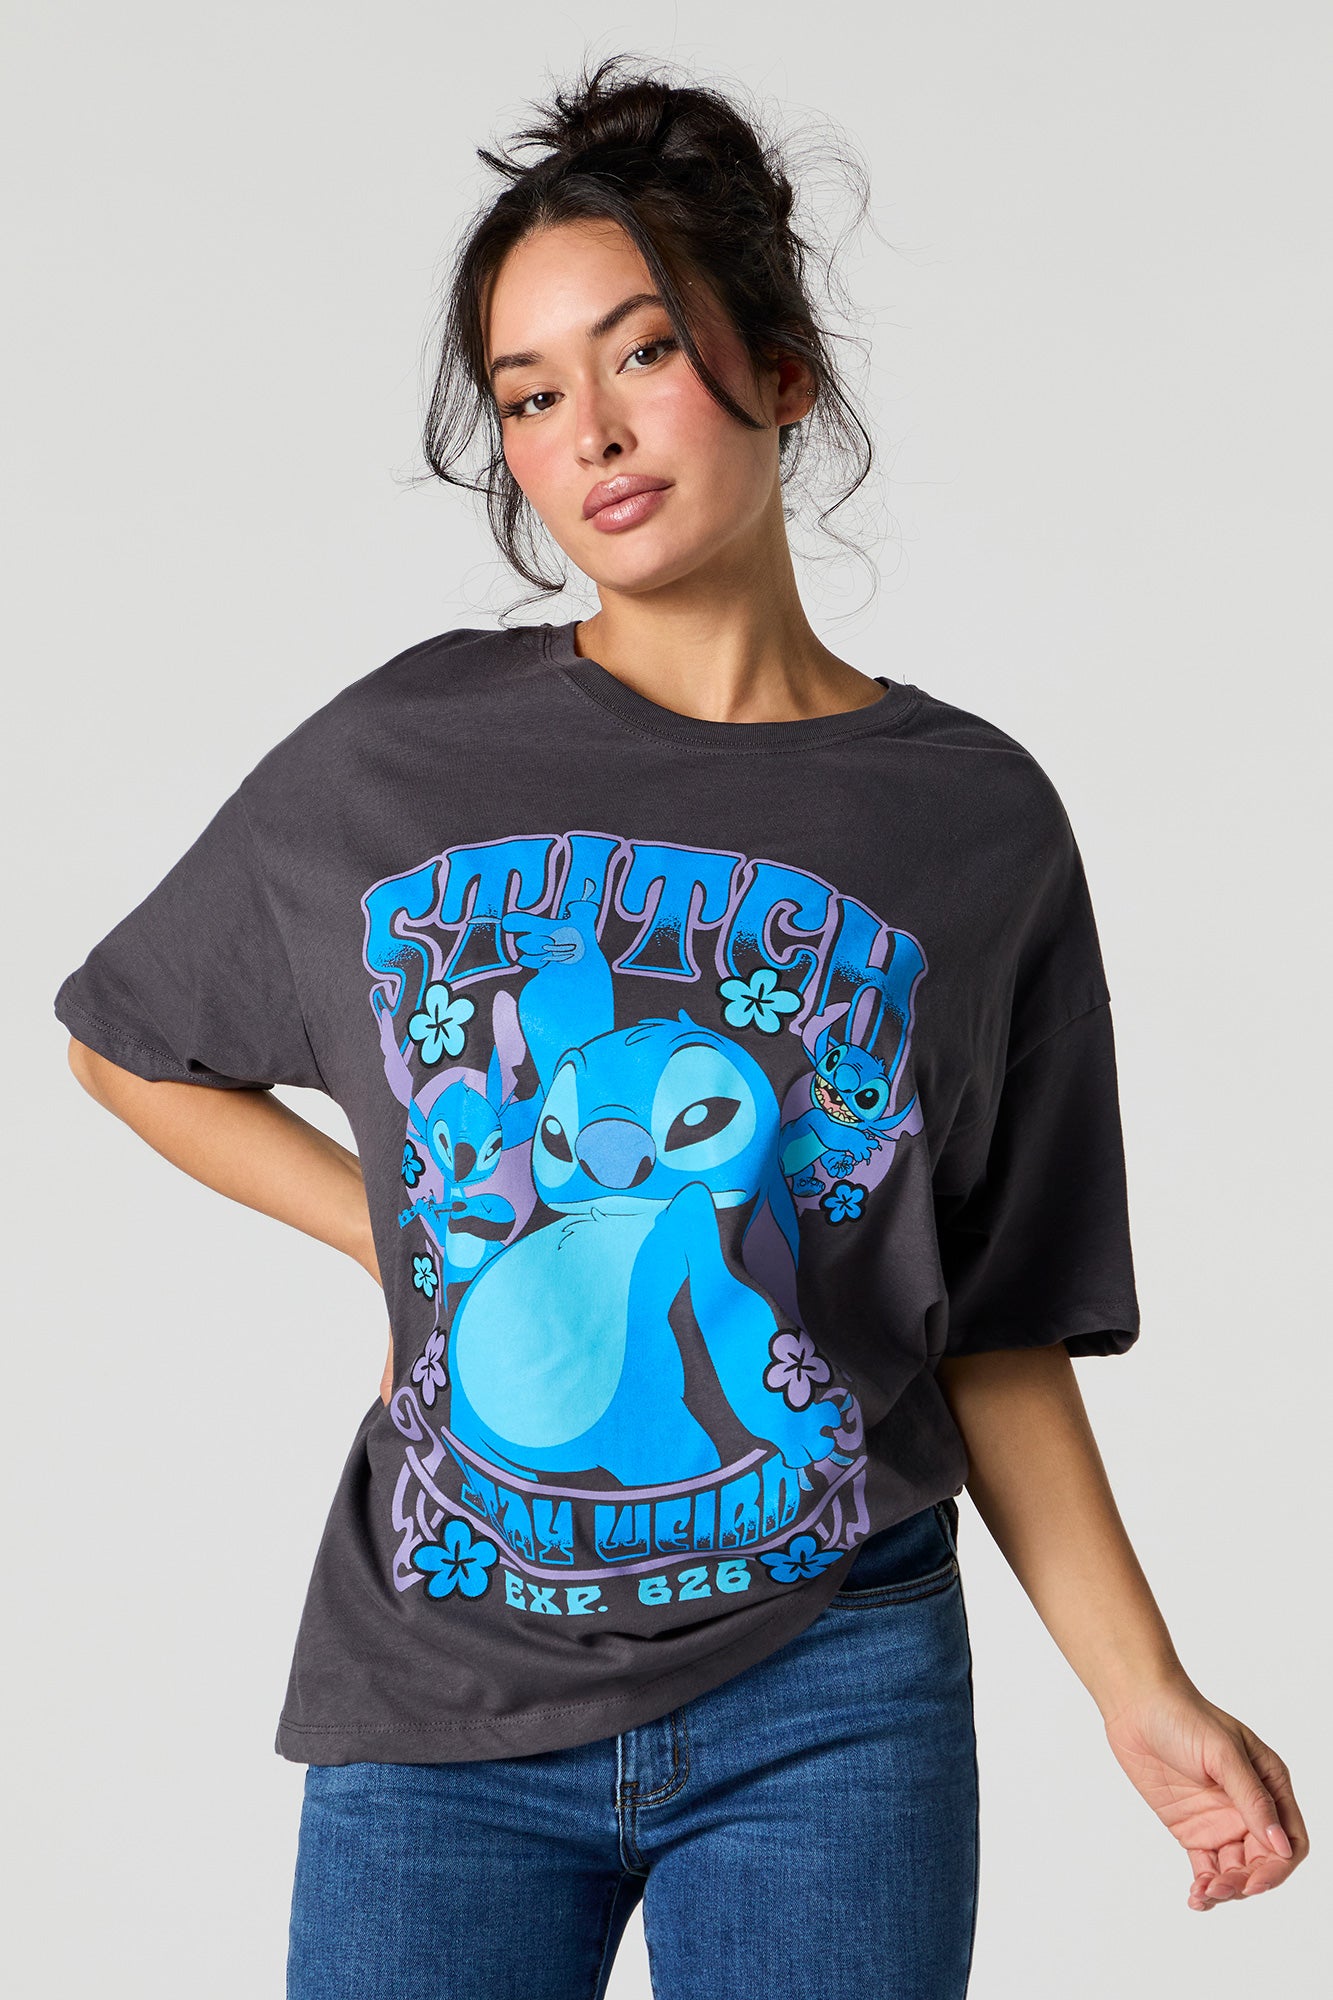 Stitch Stay Weird Graphic Boyfriend T-Shirt